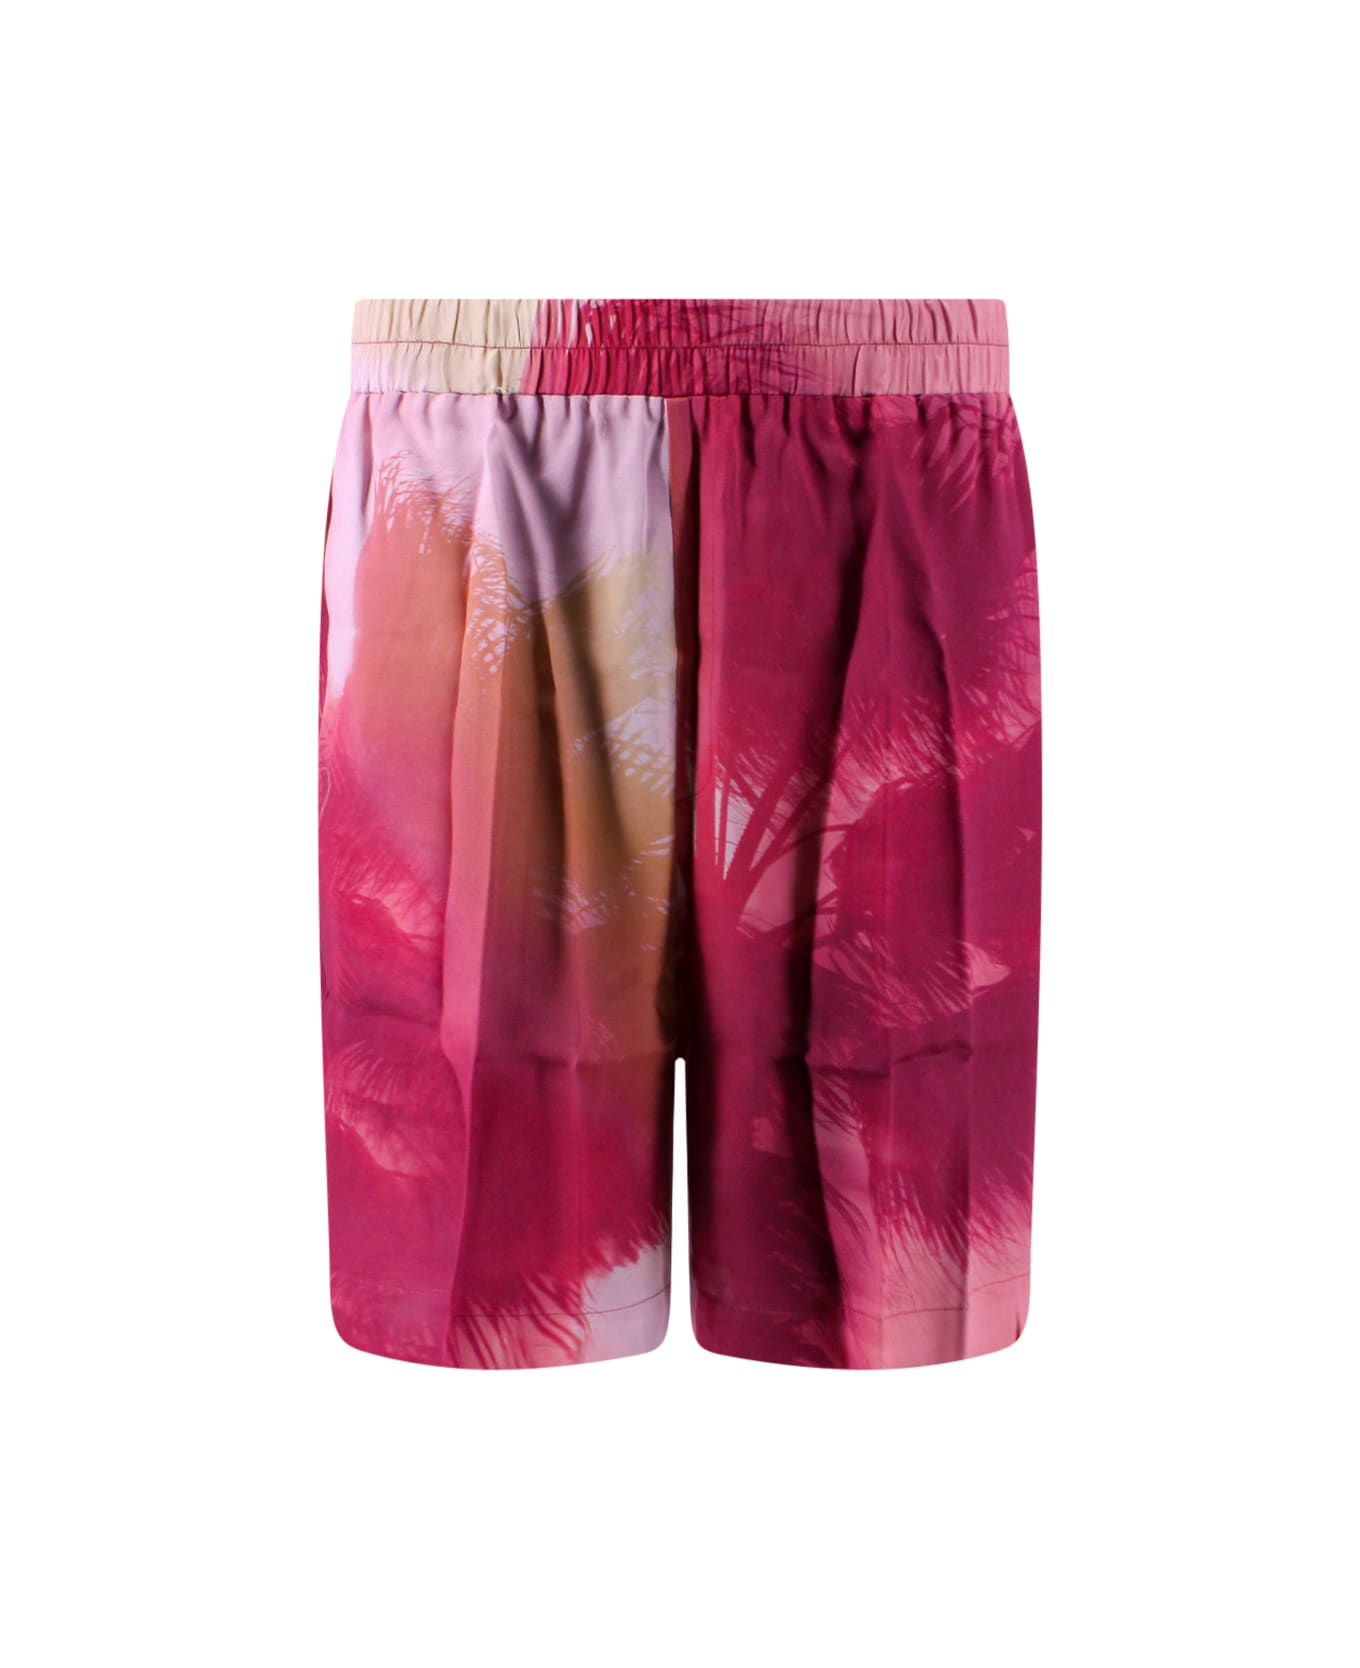 Laneus Bermuda Shorts - Pink ショートパンツ